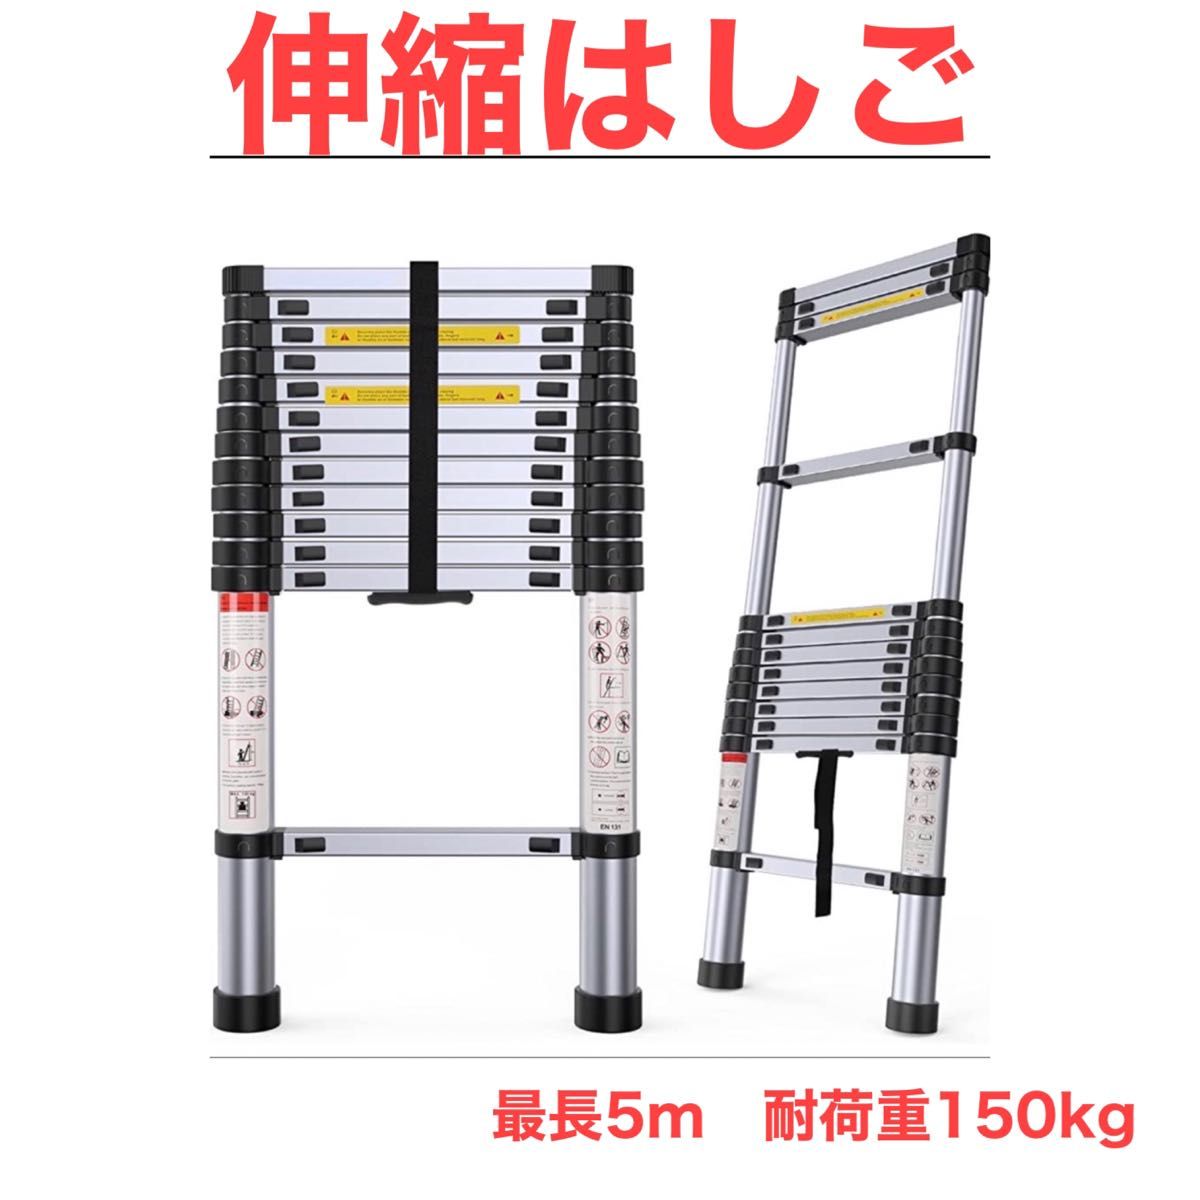 はしご 伸縮 5m 150kg 家庭用 業務用 災害 防災 日本語説明書付 梯子